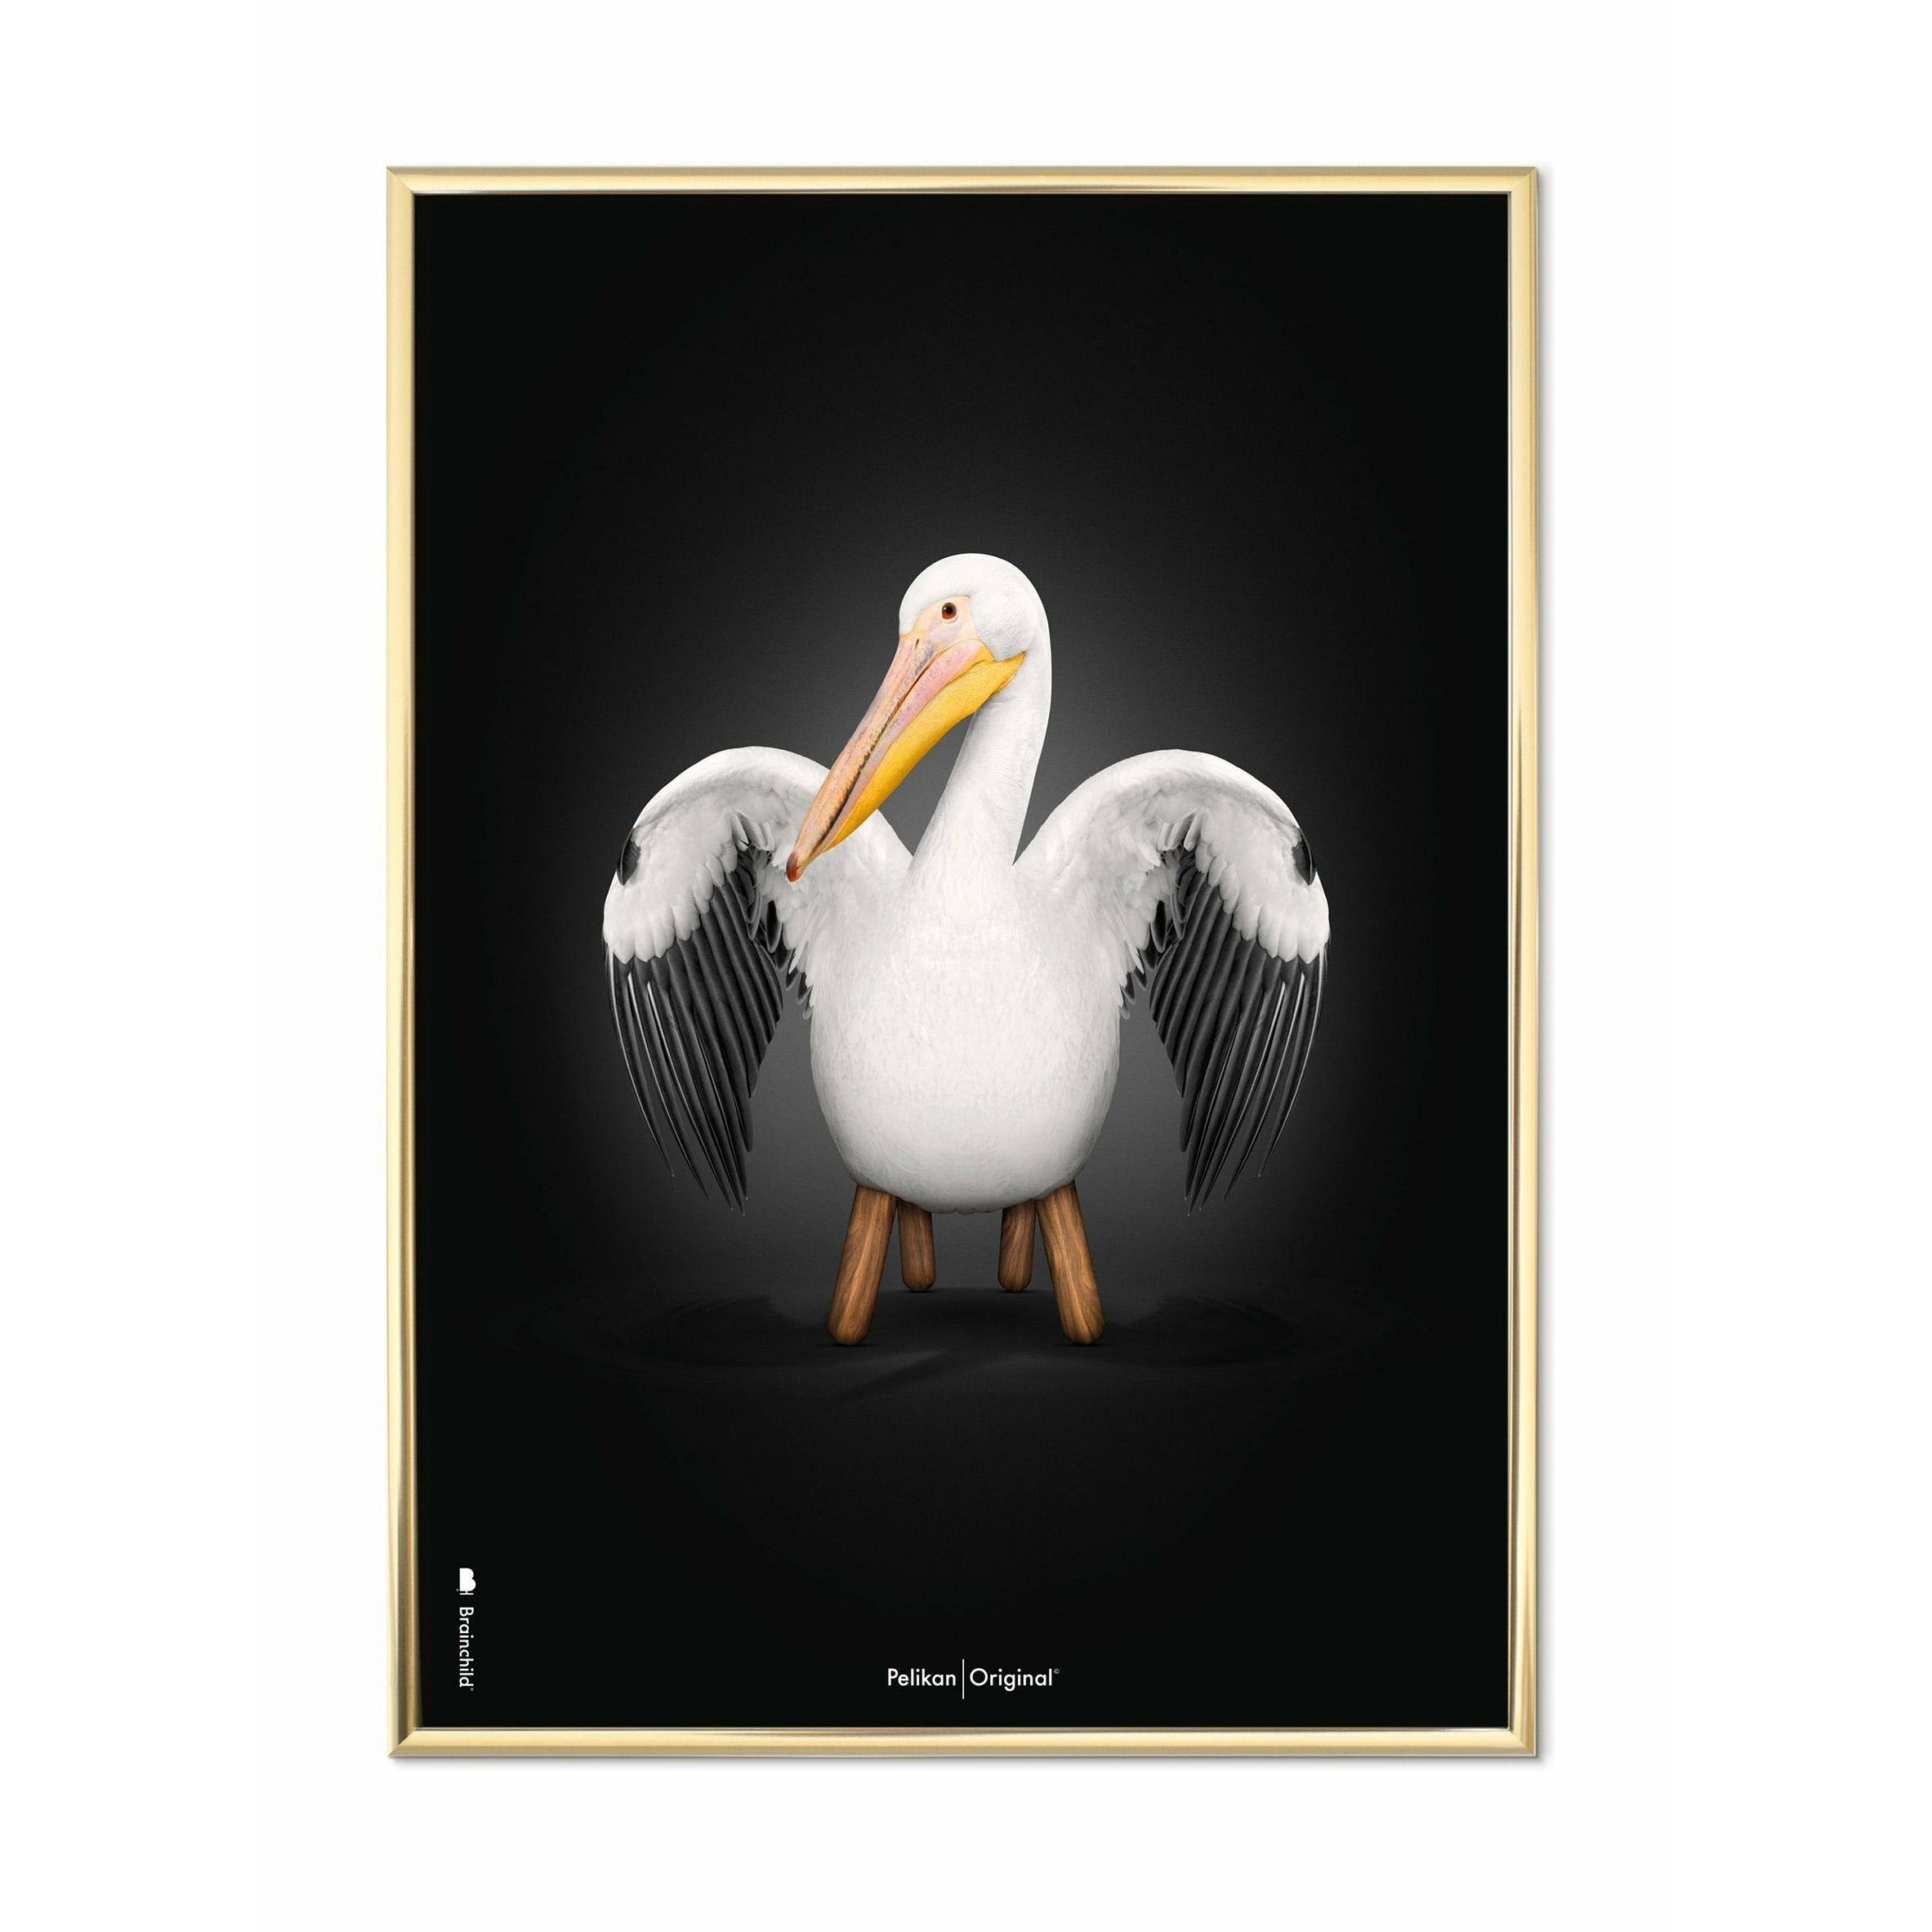 Brainchild Pelikan Classic plakát, mosazný barevný rám 70 x100 cm, černé pozadí